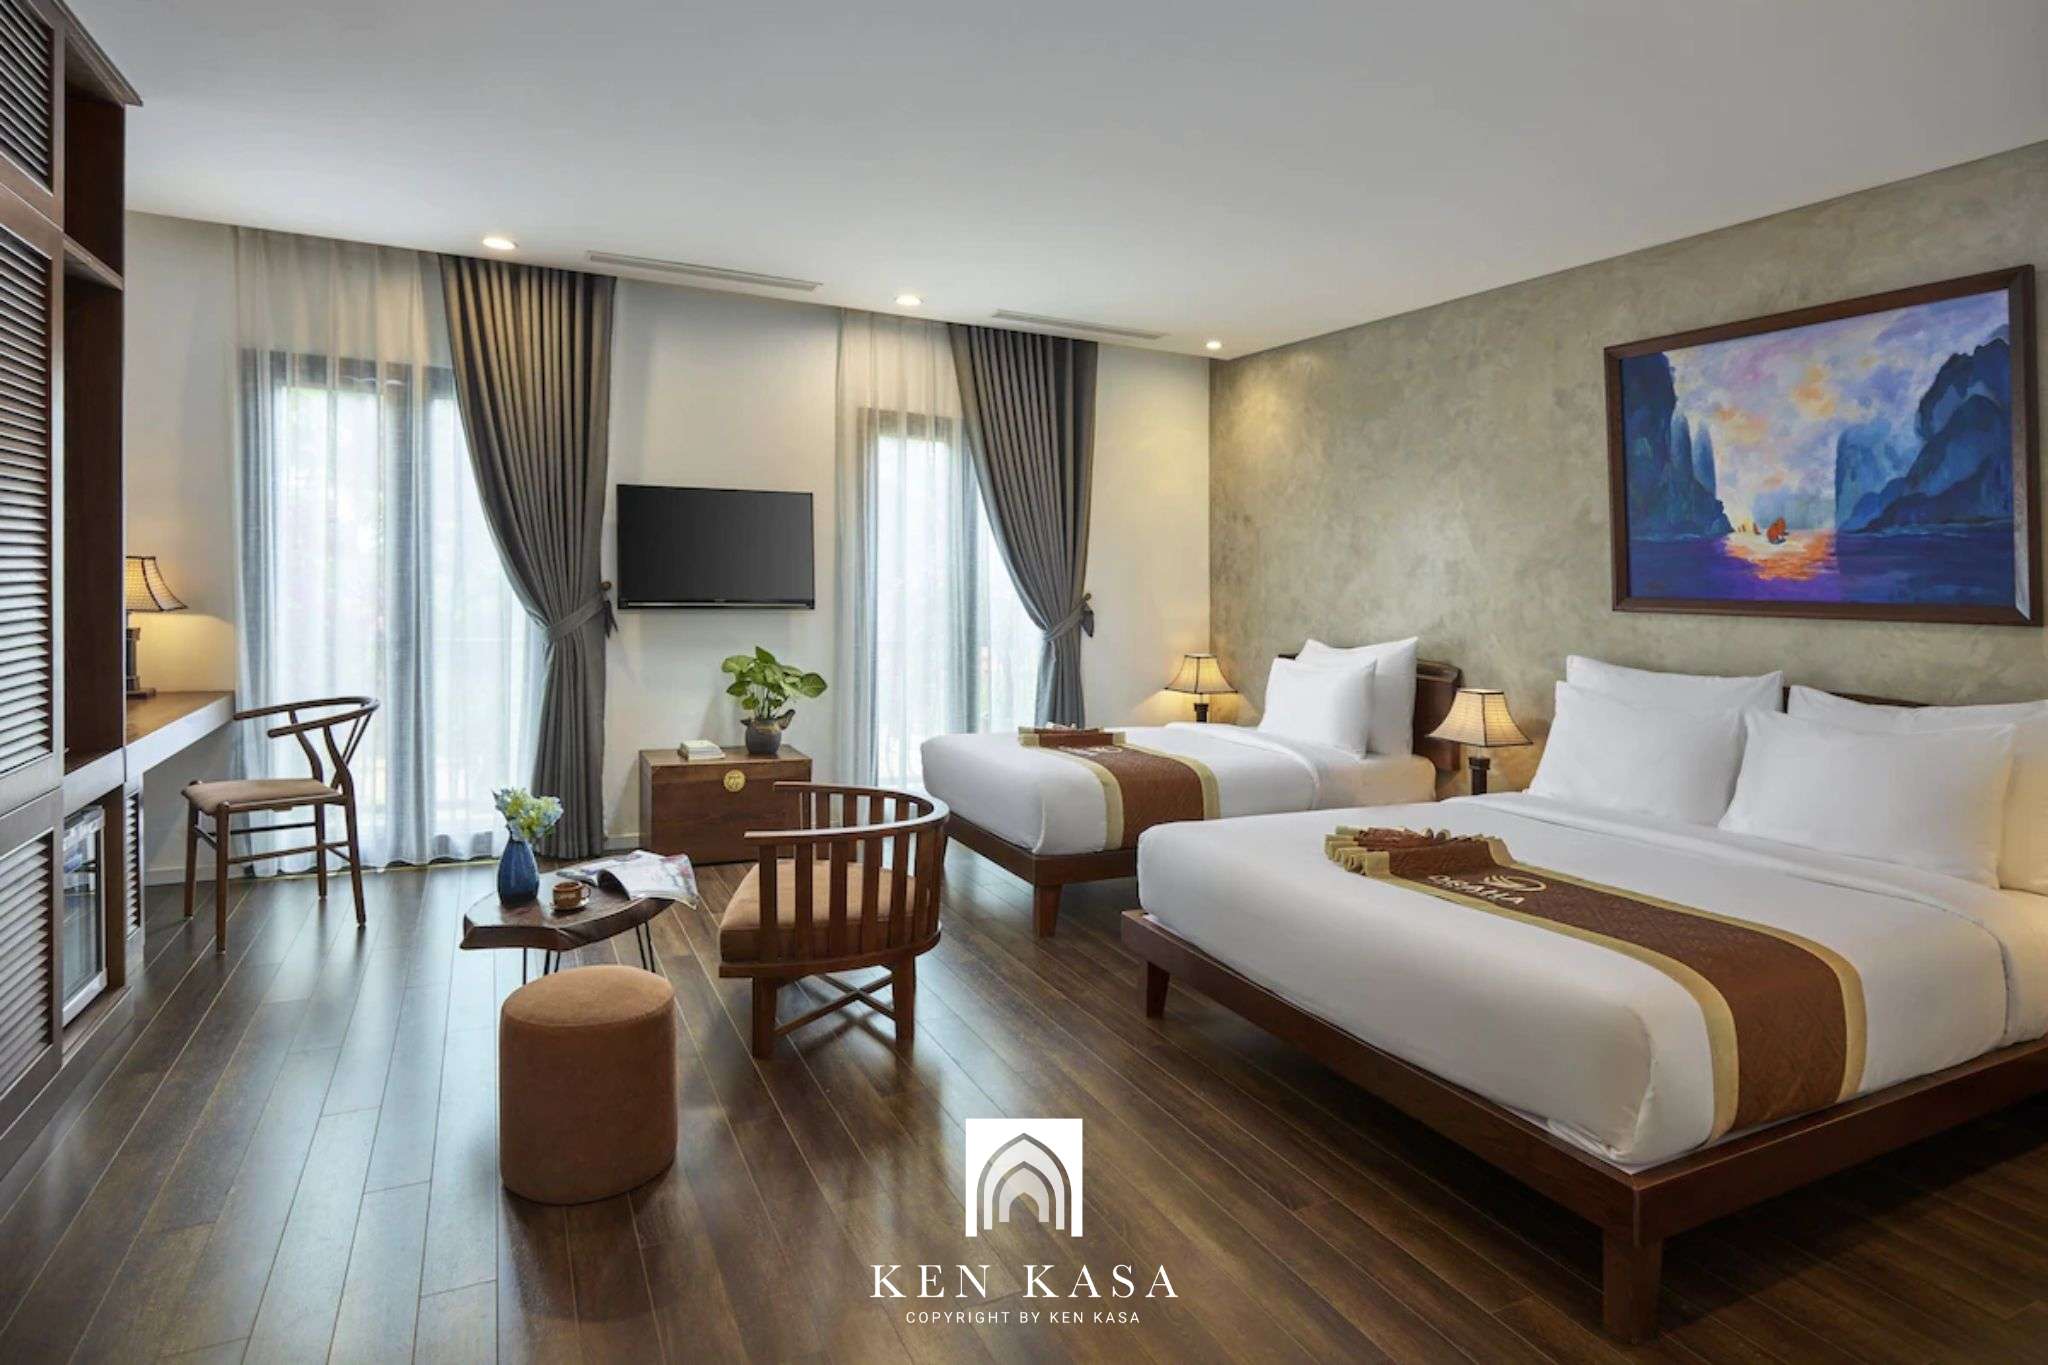 Đây là hạng phòng thích hợp cho các nhóm bạn hoặc gia đình muốn đến Draha Ha Long Hotel trải nghiệm